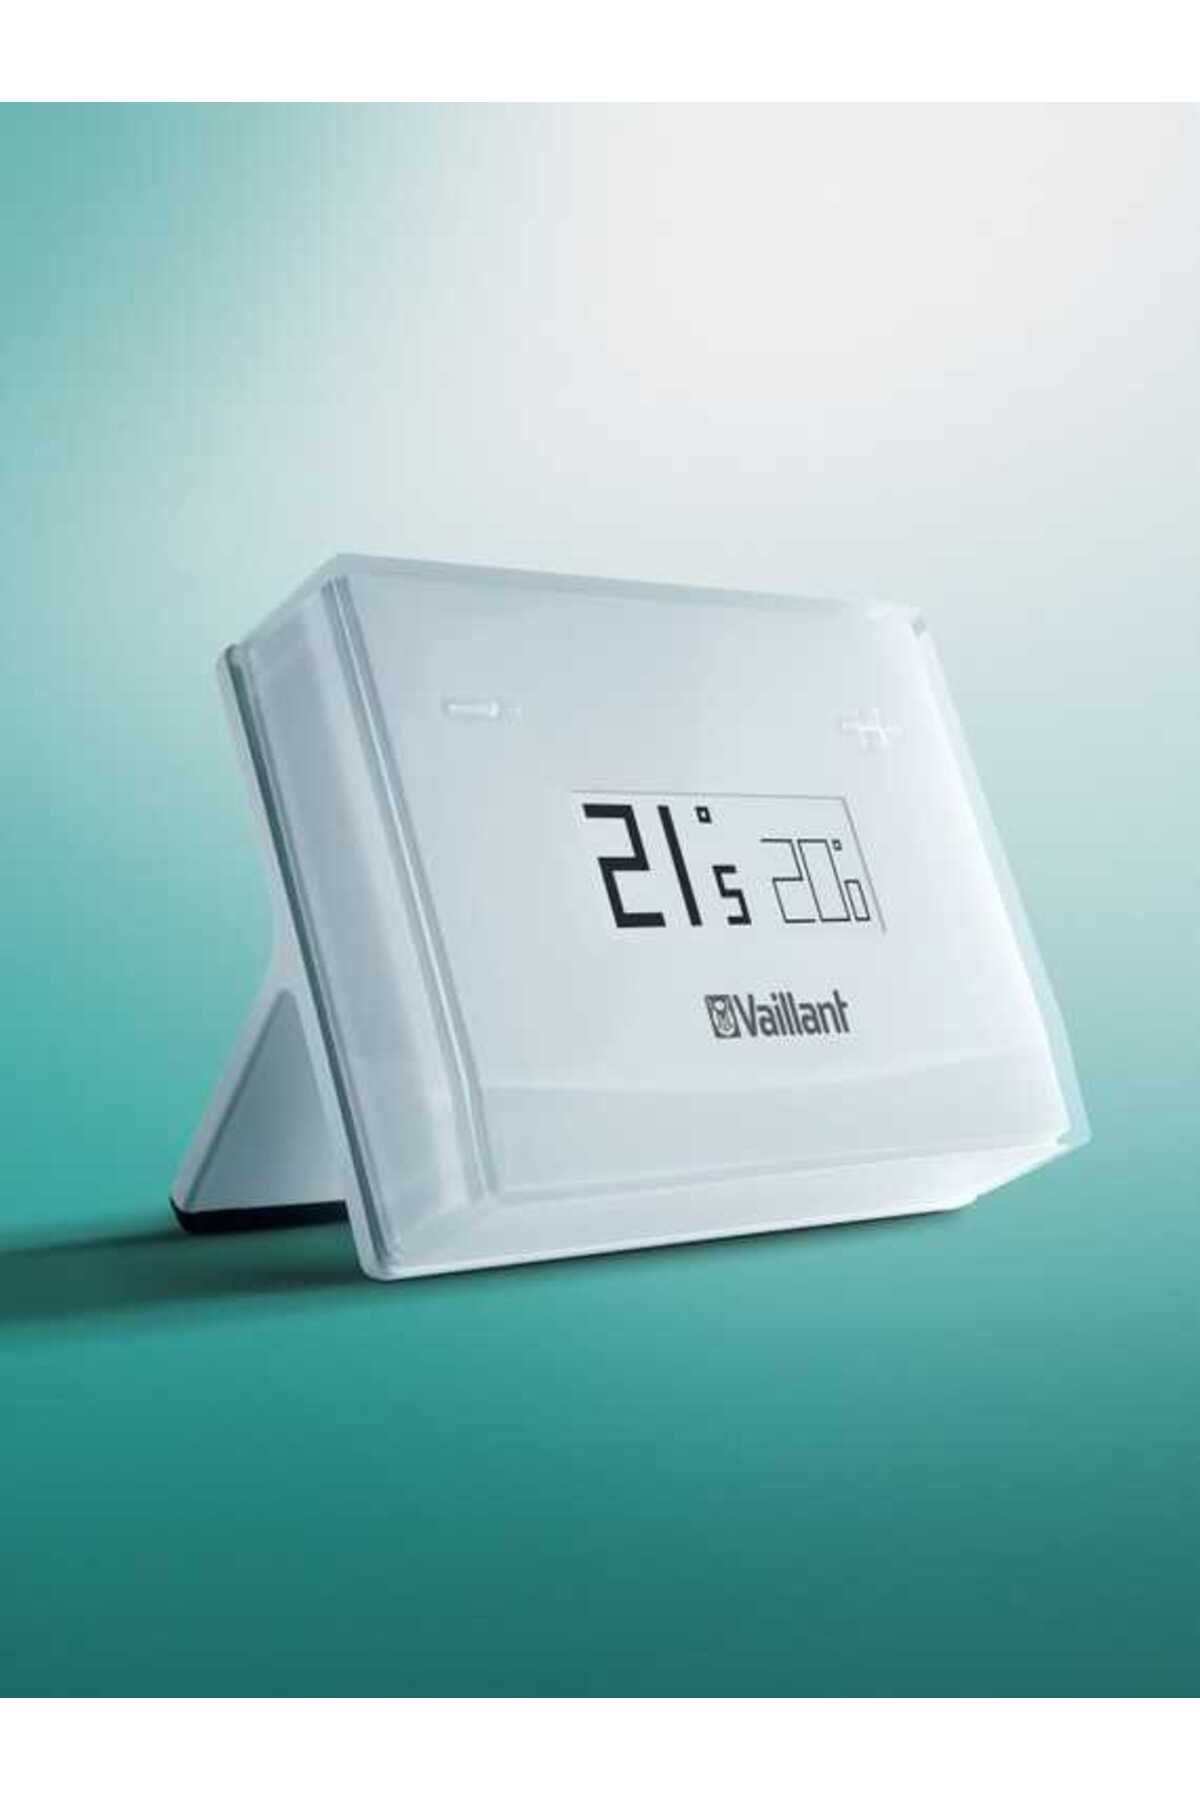 Vaillant Erelax Wifi Kontrollü Akıllı Oda Termostatı